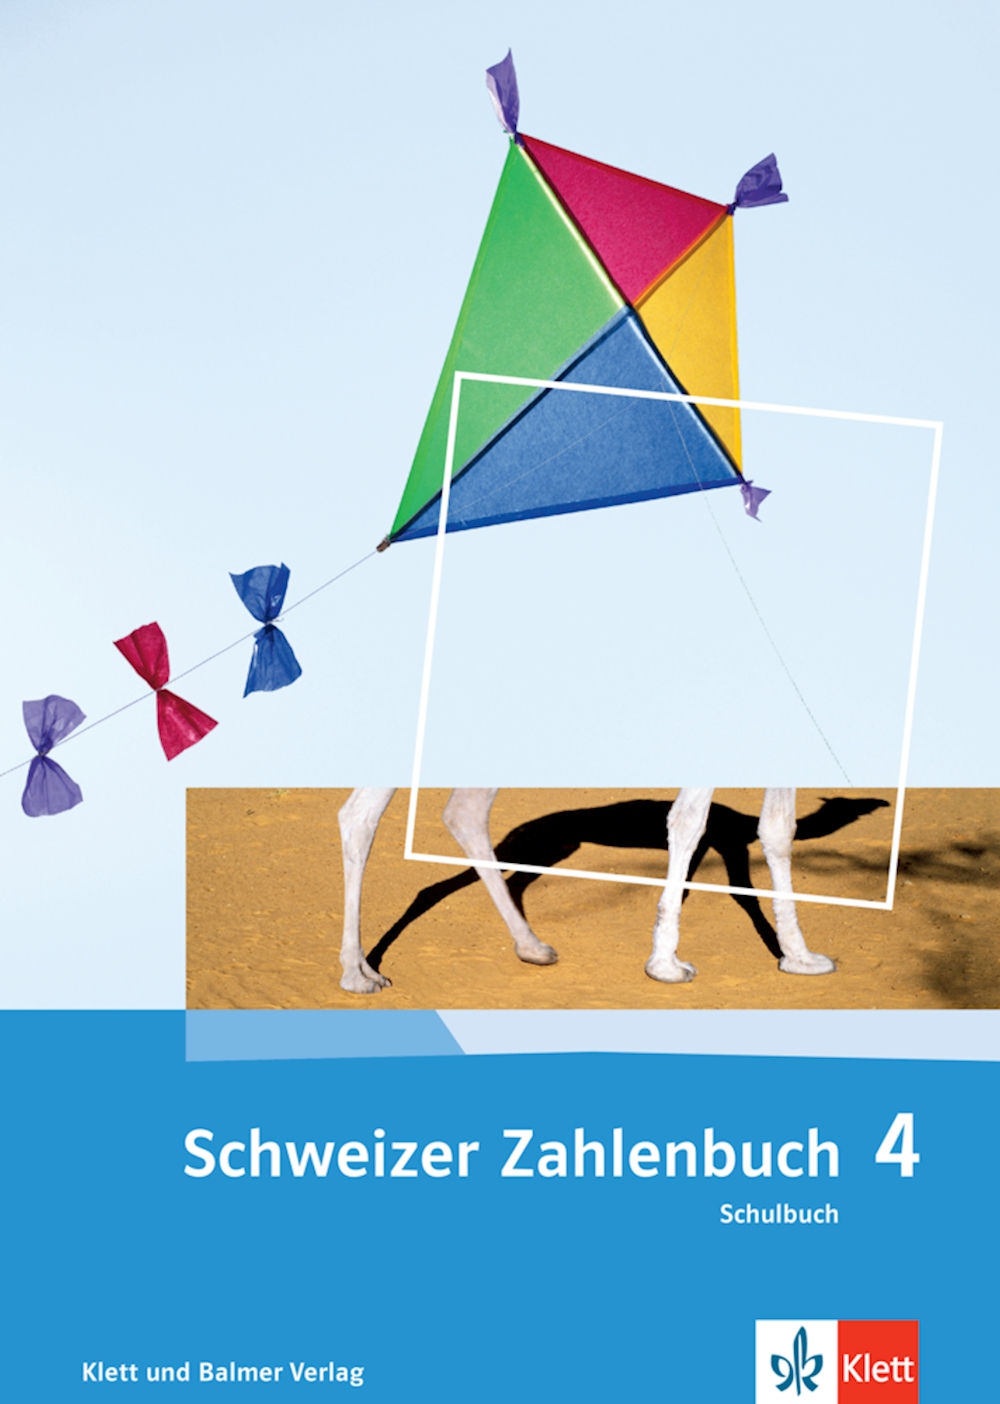 Schweizer Zahlenbuch 4, Schulbuch 